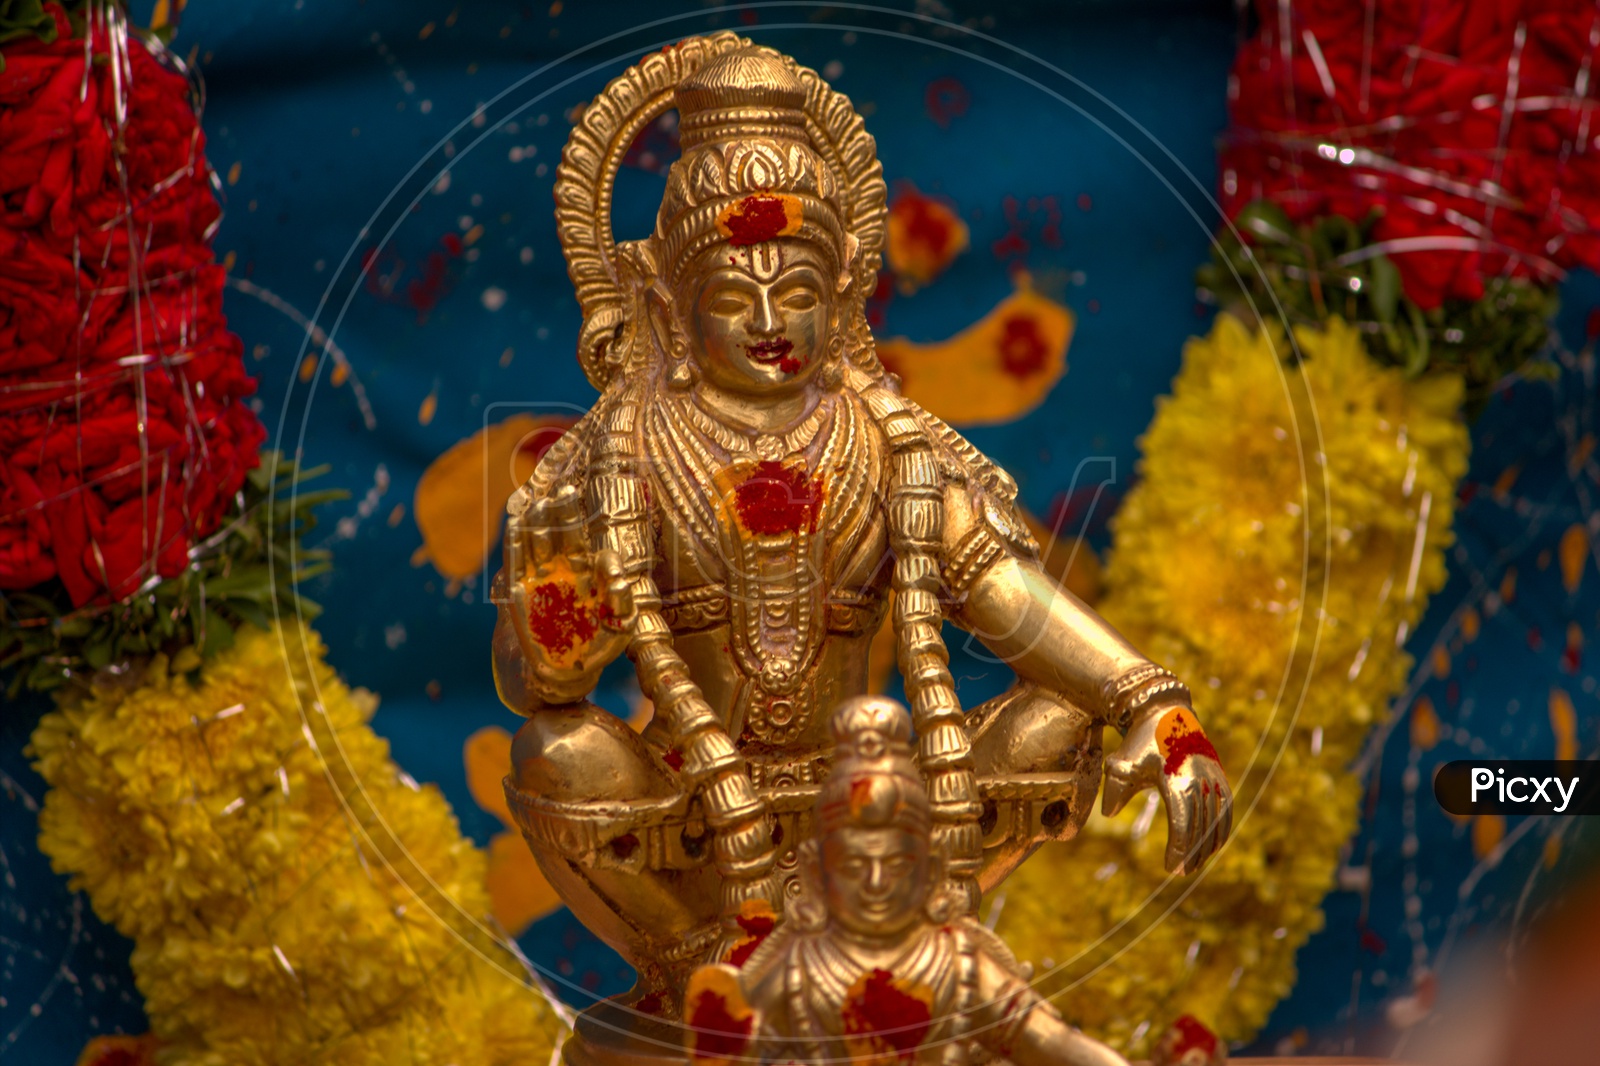 Image of Ayyappa Swamy Idol in Ayyappa Swami Pooja-UY219149-Picxy